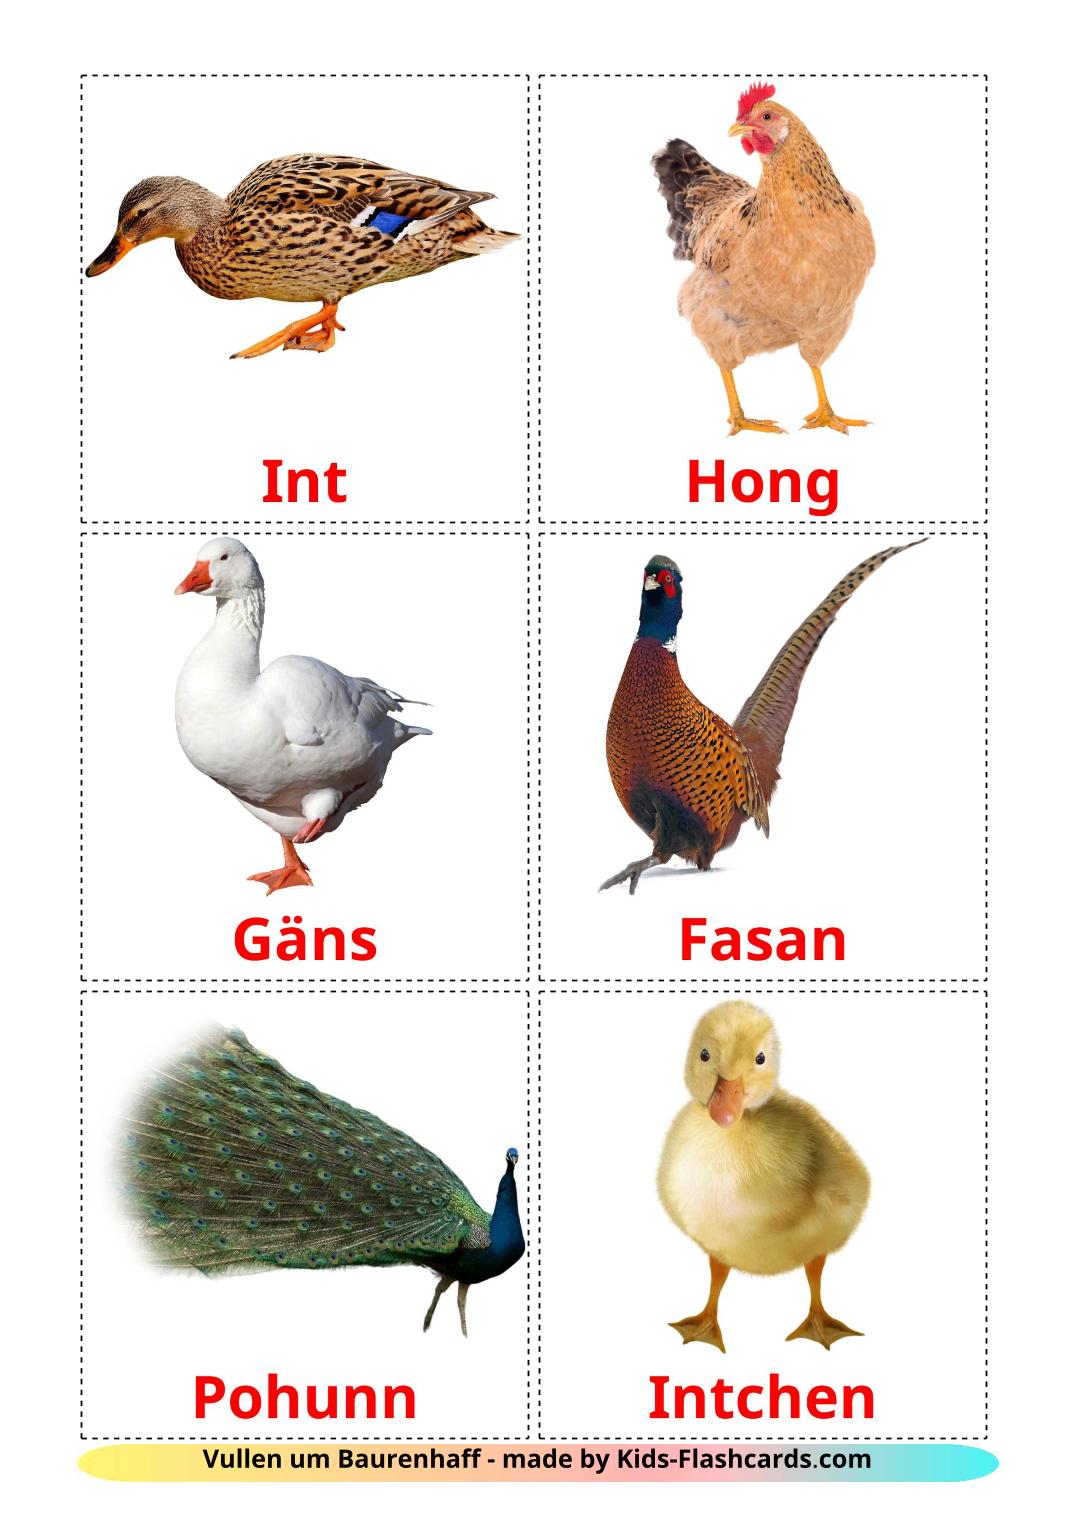 Les Oiseaux de Ferme - 11 Flashcards luxembourgeois imprimables gratuitement